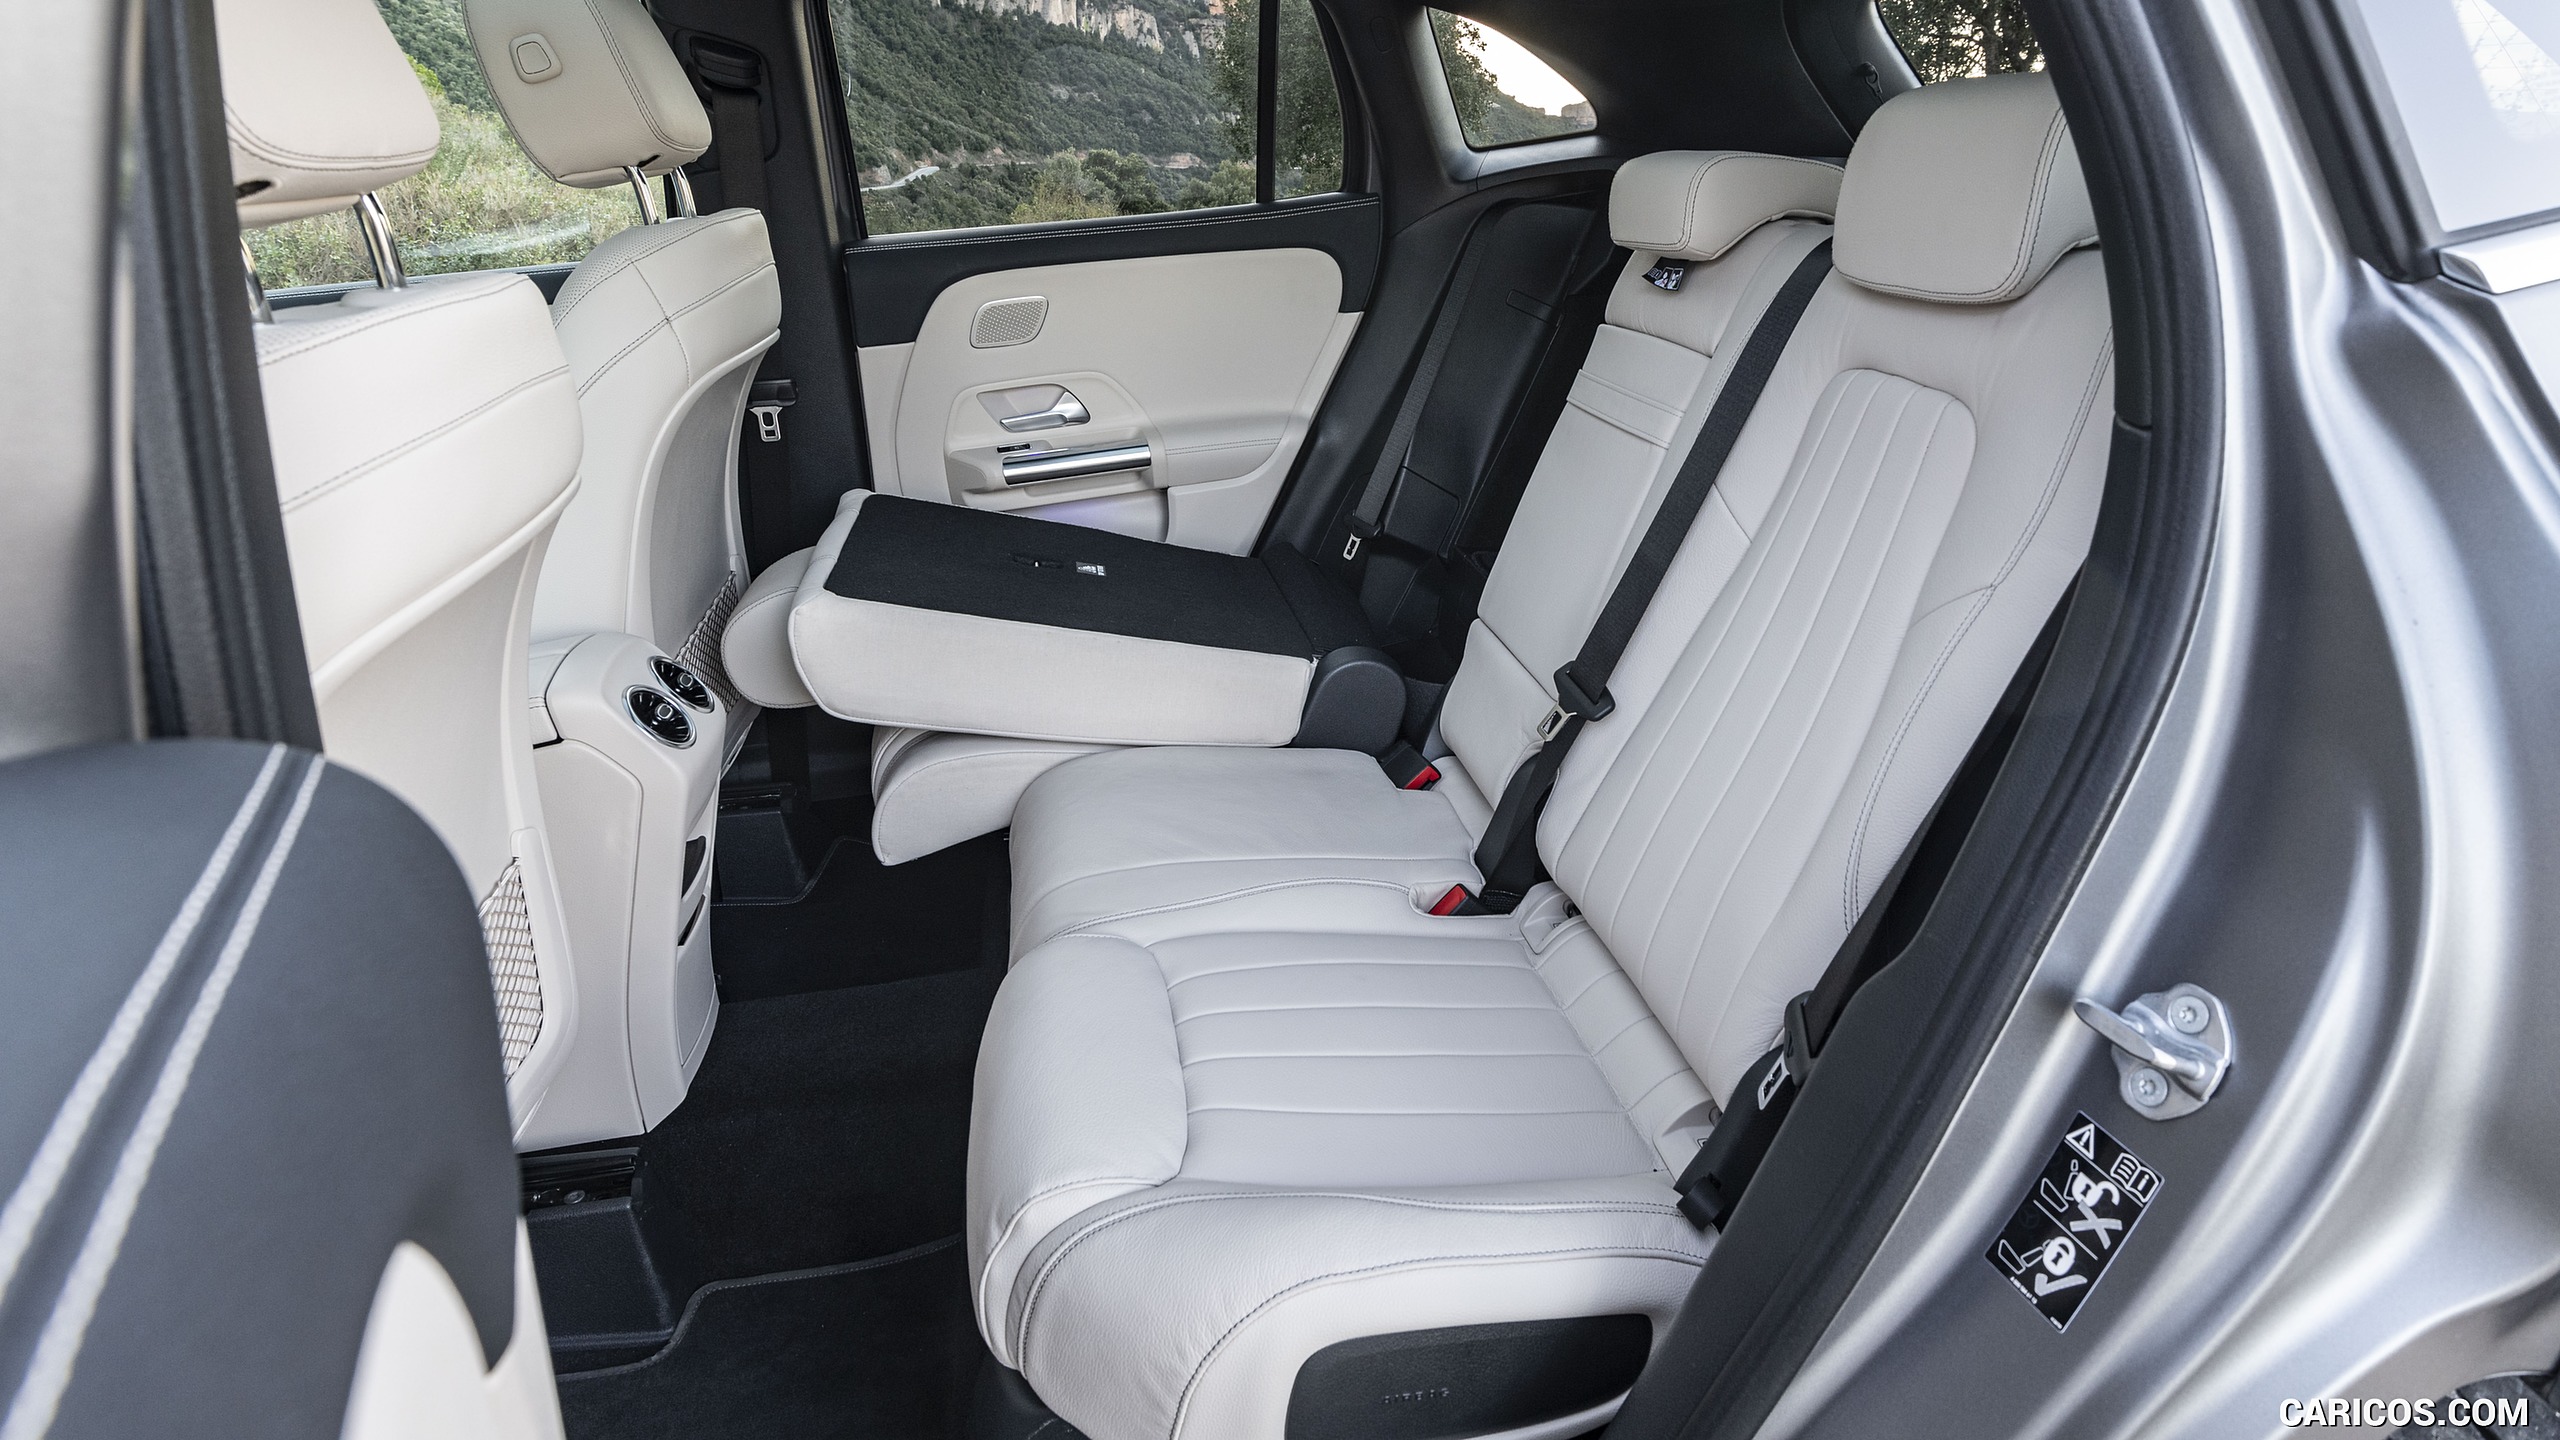 2021 Mercedes-Benz GLA - Interior, Rear Seats, #115 of 280